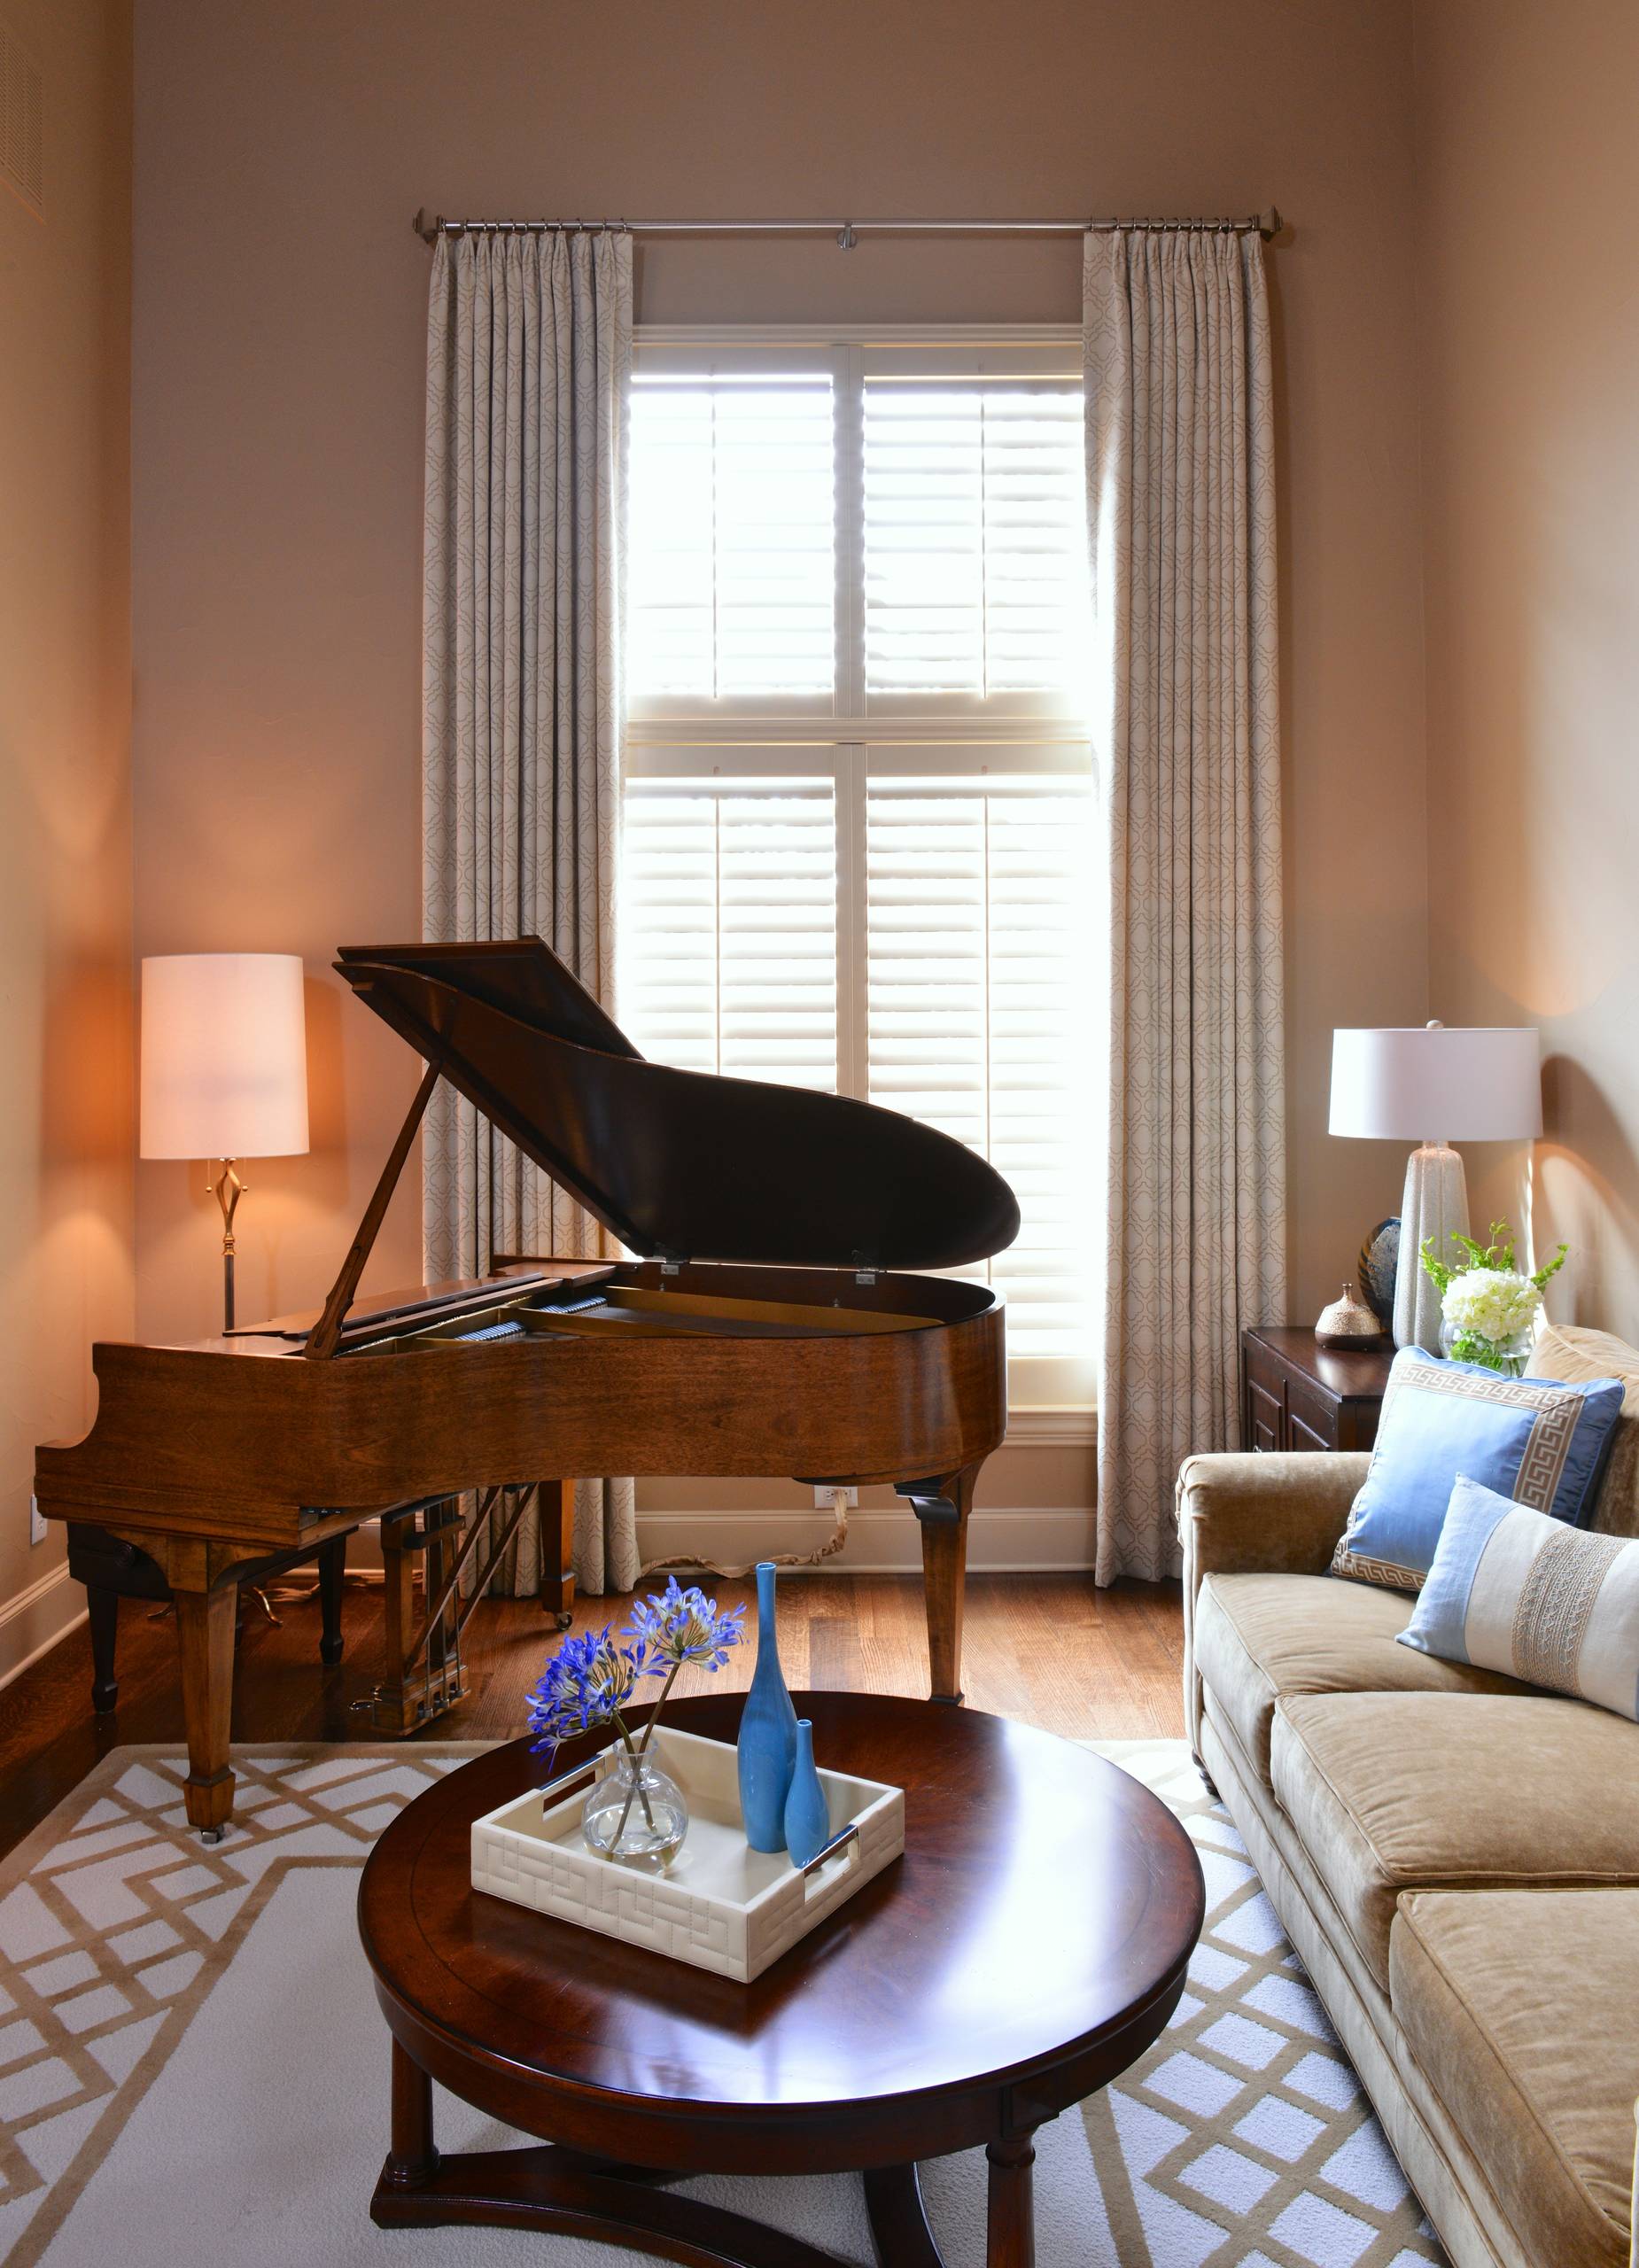 Small Room Baby Grand Piano - Photos & Ideas | Houzz